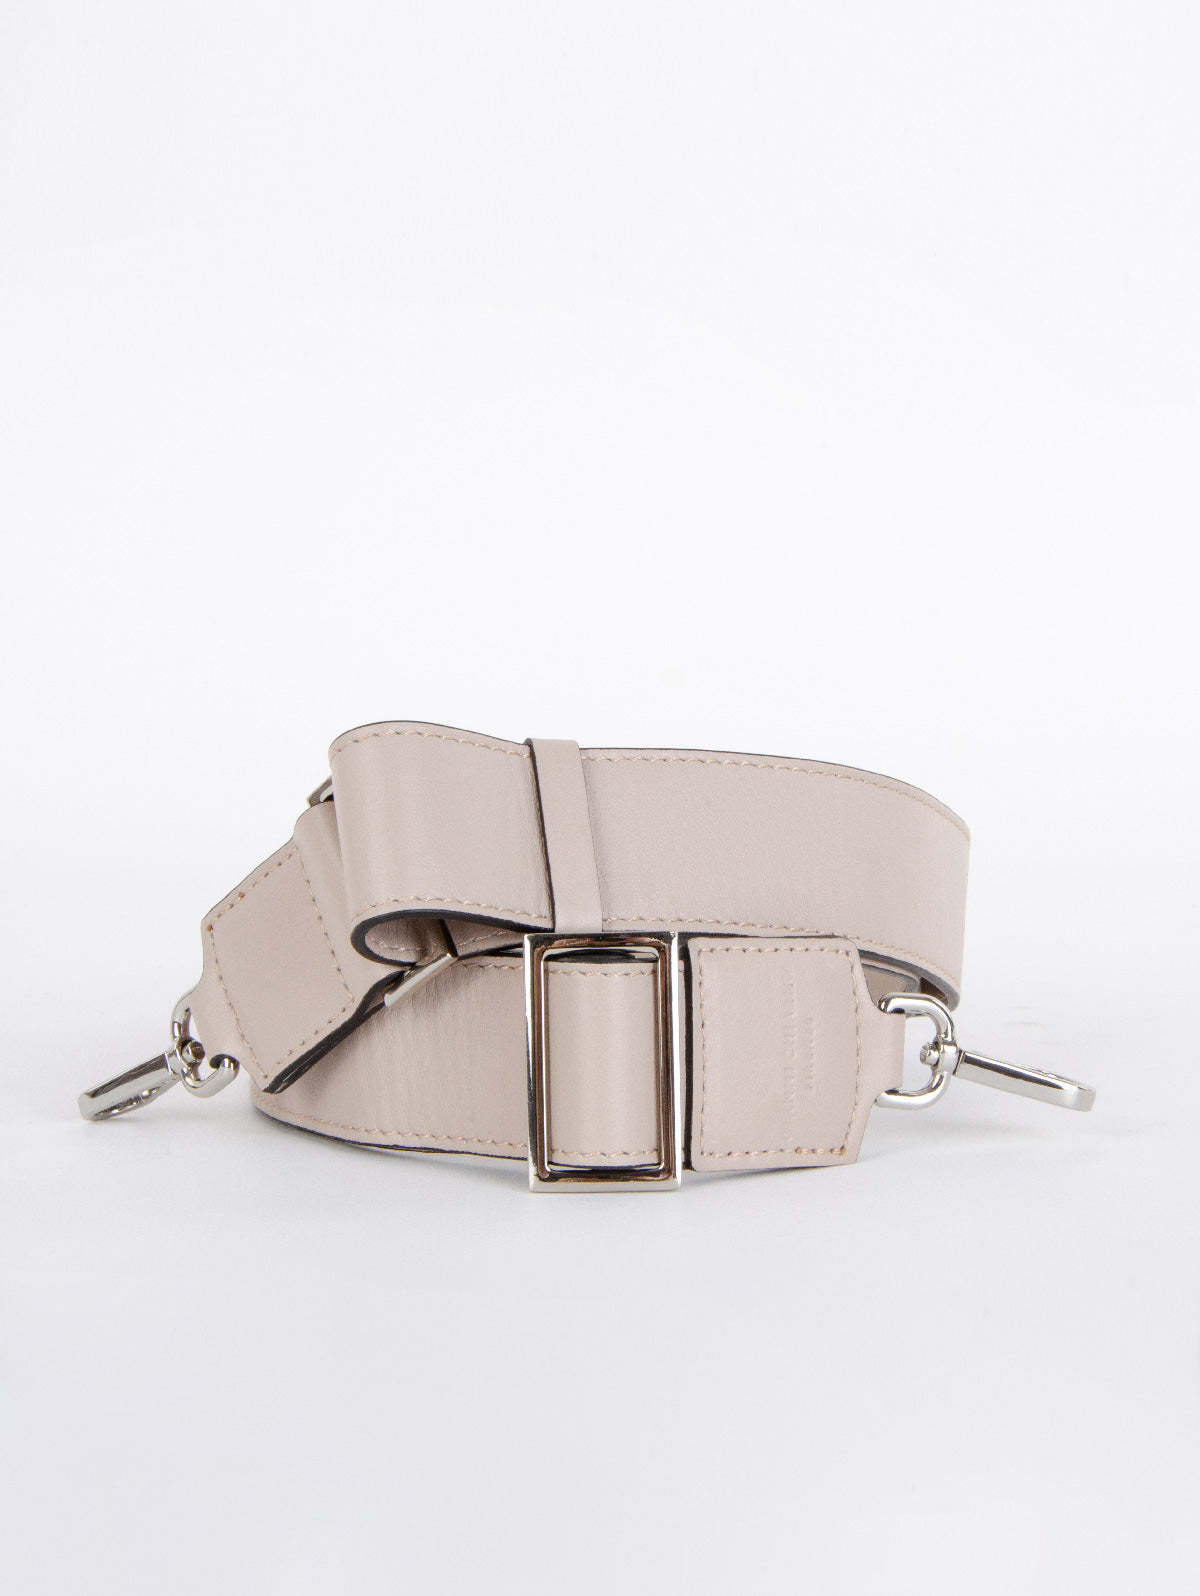 Gianni Chiarini Toulosse shoulder bag in Magnolia leather